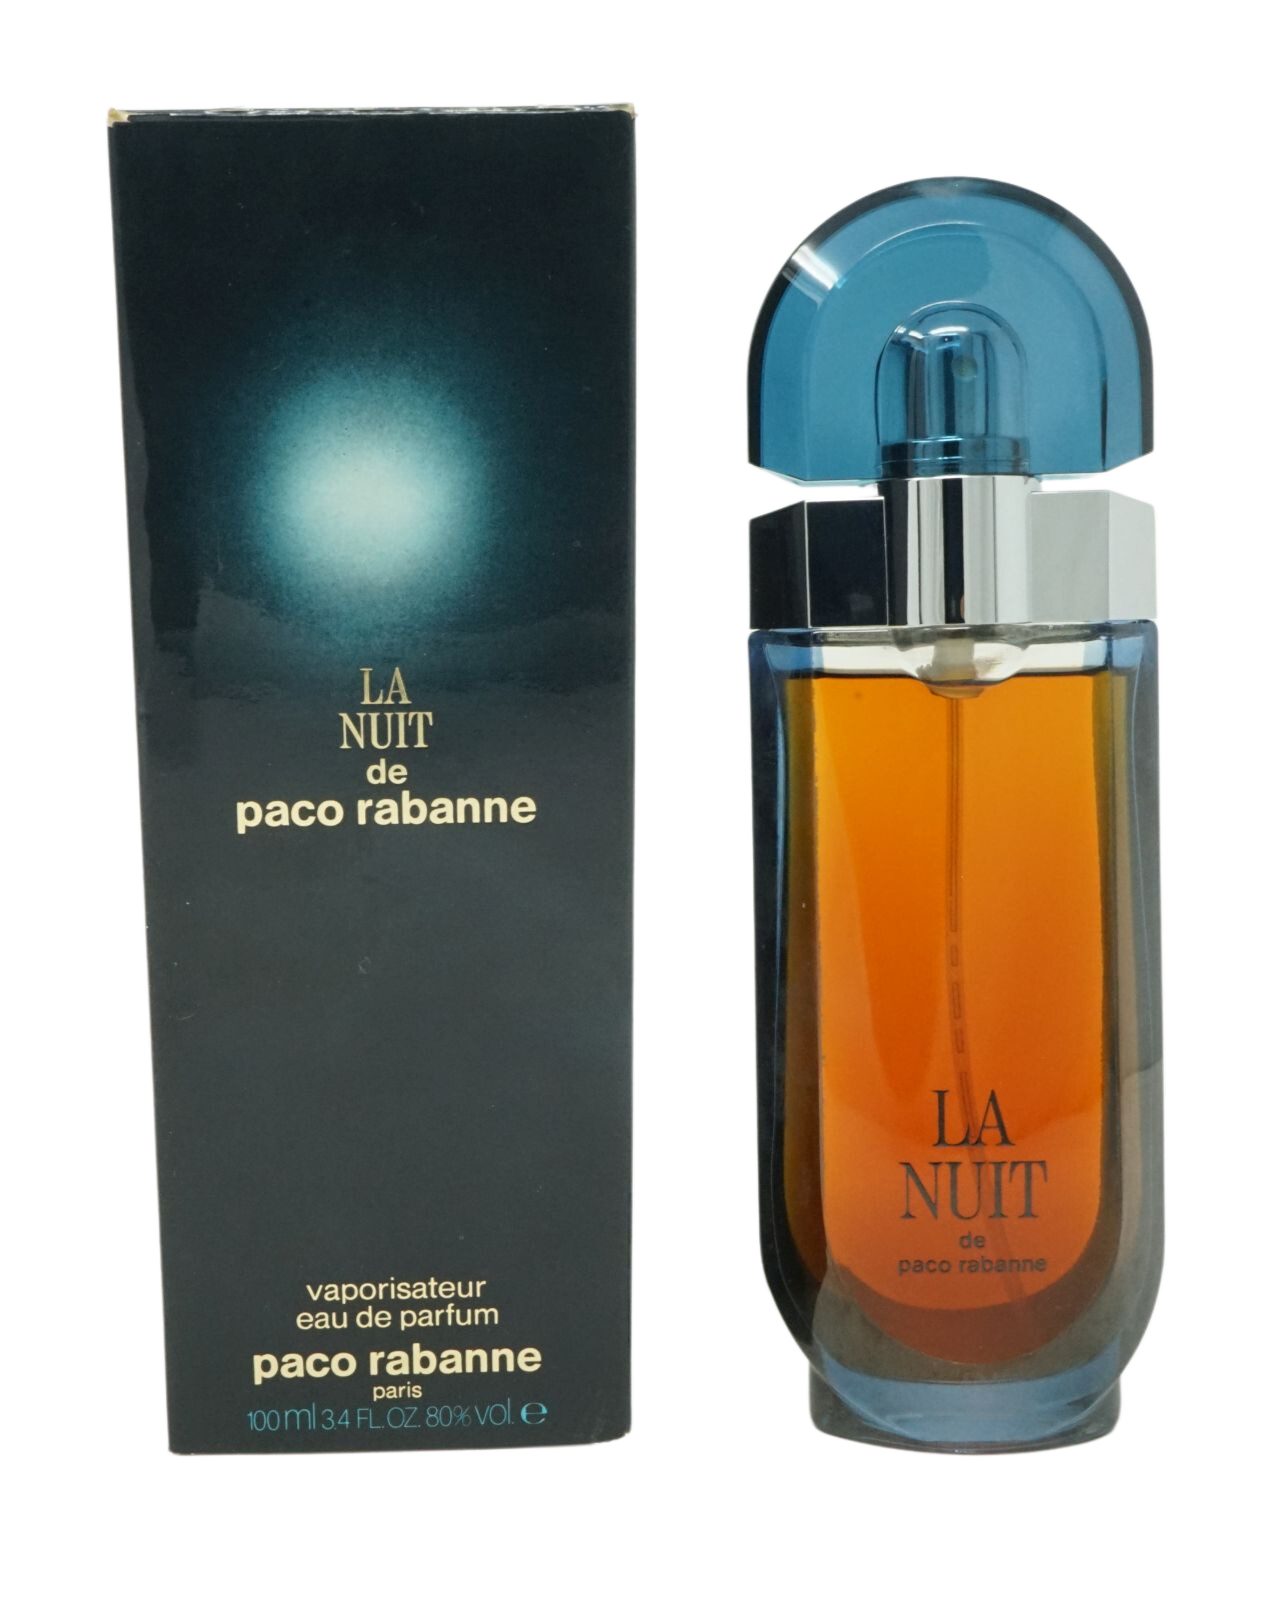 Gesichtsmaske paco Paco Rabanne Eau de Vapo Nuit de 100ml rabanne La Rabanne Paco Parfum